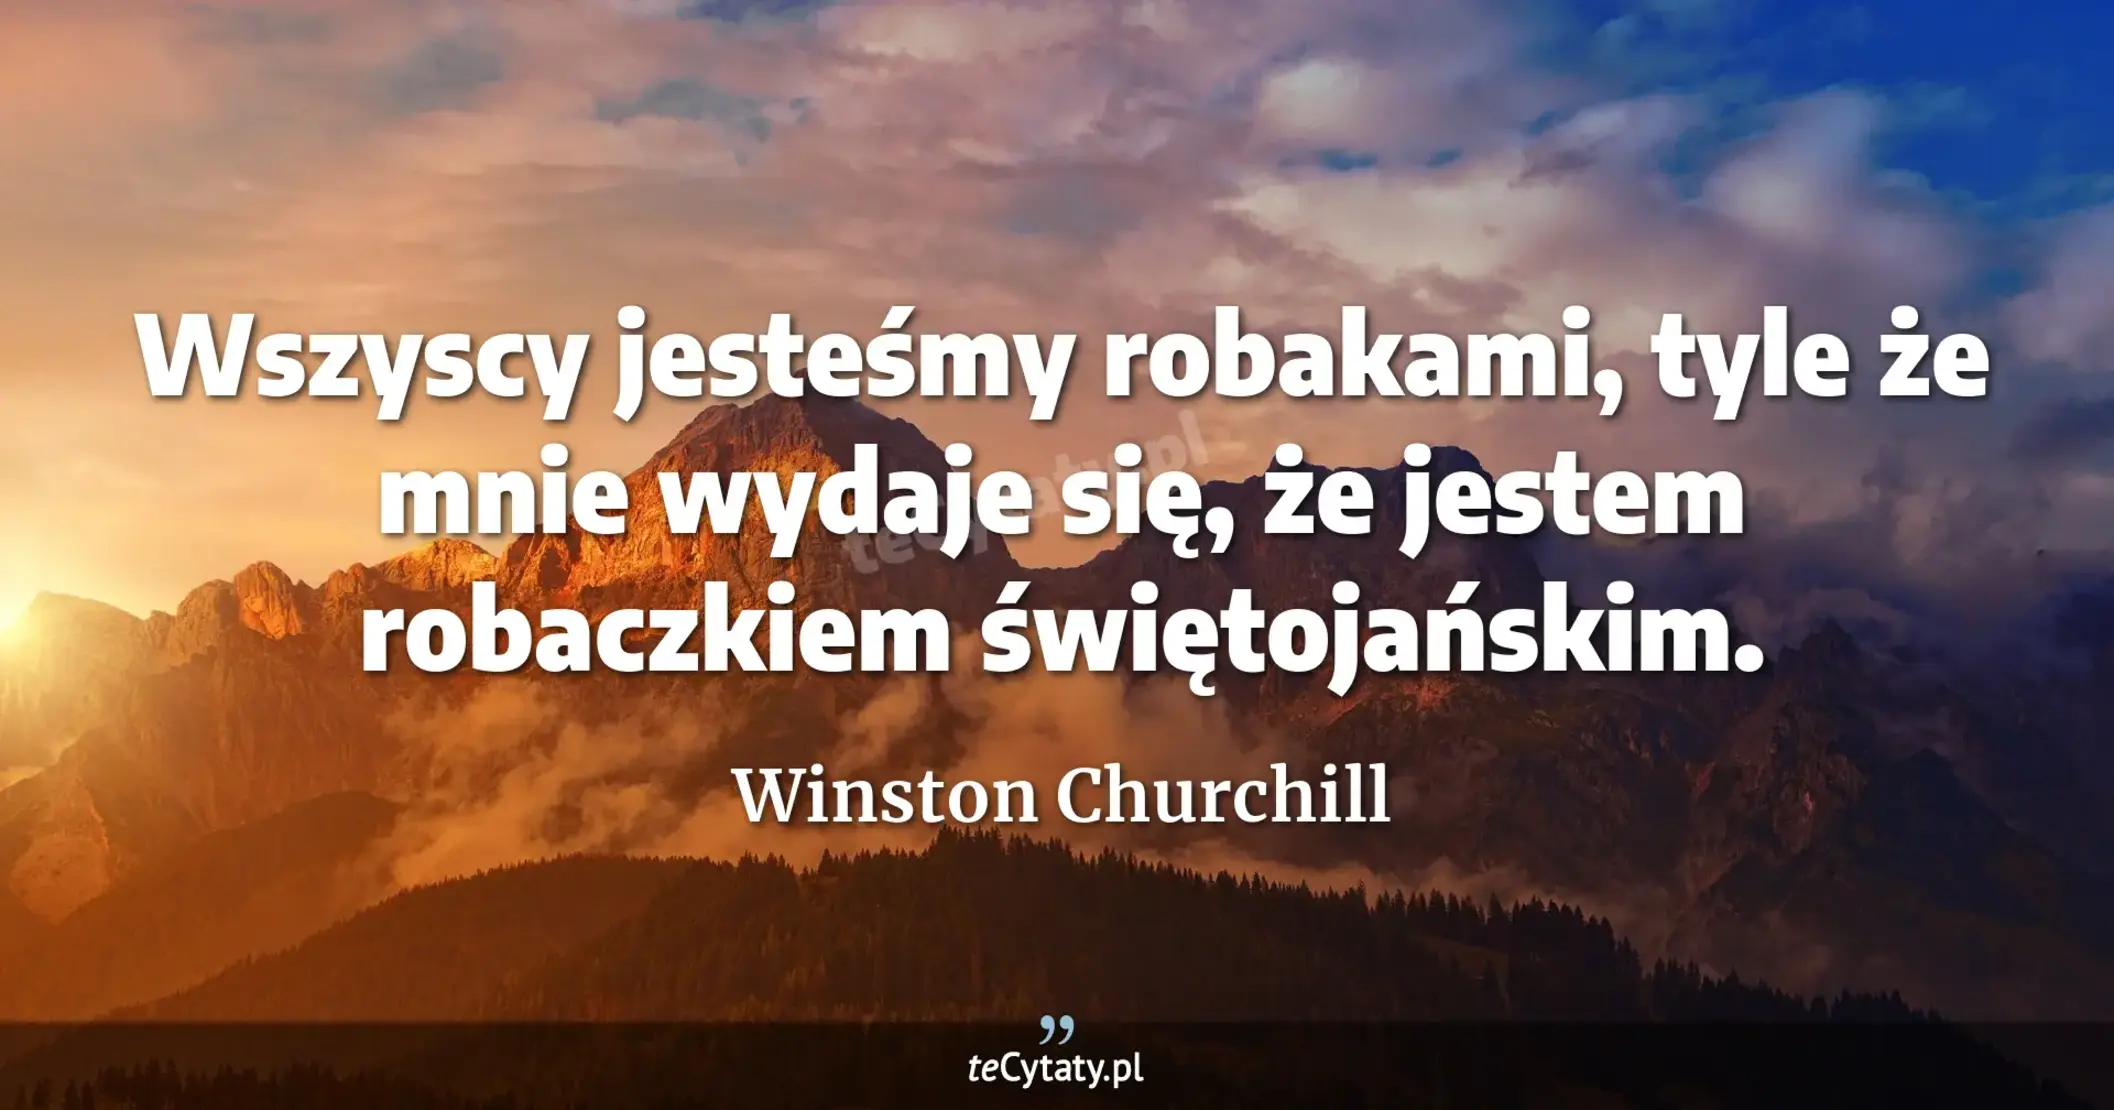 Wszyscy jesteśmy robakami, tyle że mnie wydaje się, że jestem robaczkiem świętojańskim. - Winston Churchill